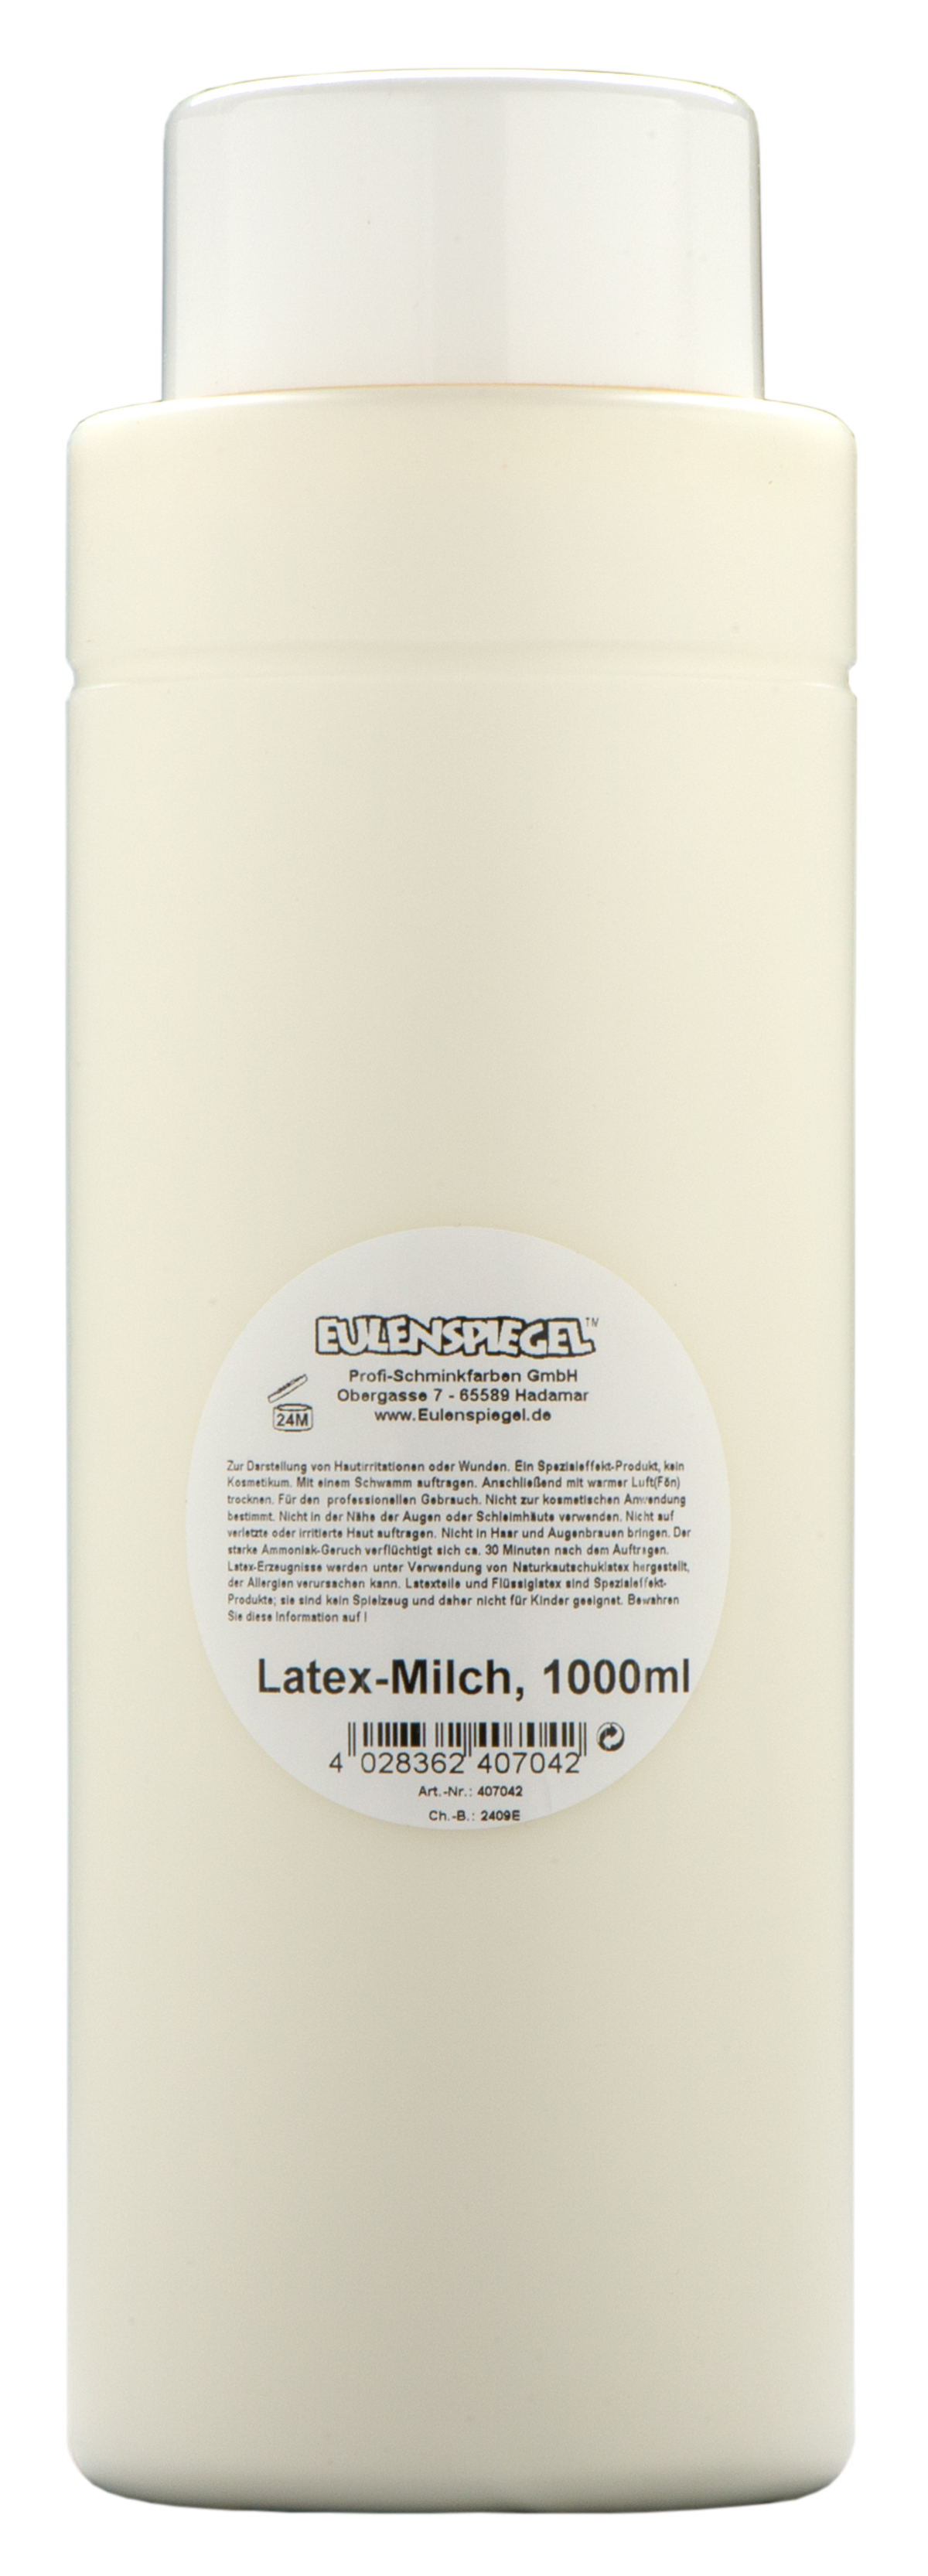 Latex-Milch, 1000ml in Flasche ungefärbte Profi-Qualität